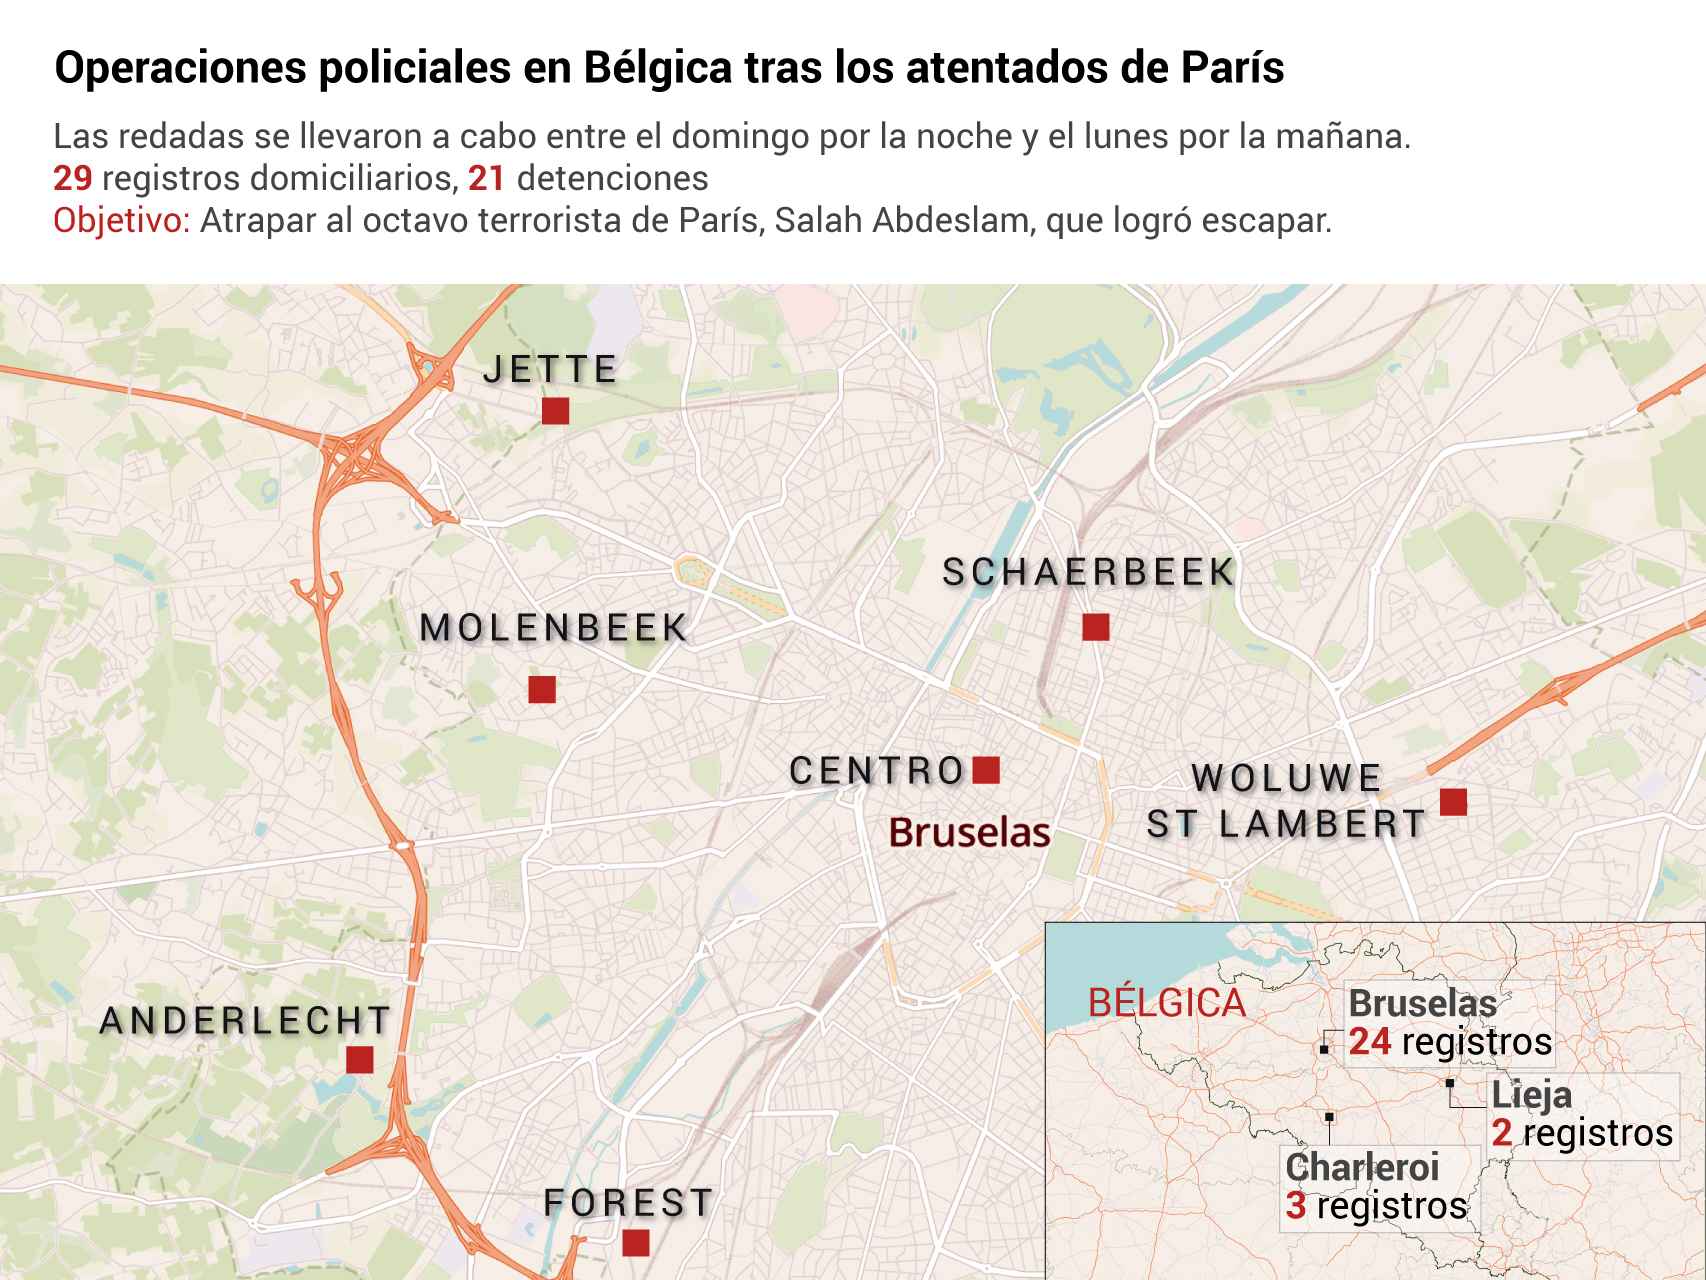 El mapa de las redadas en Bélgica para cazar al octavo terrorista